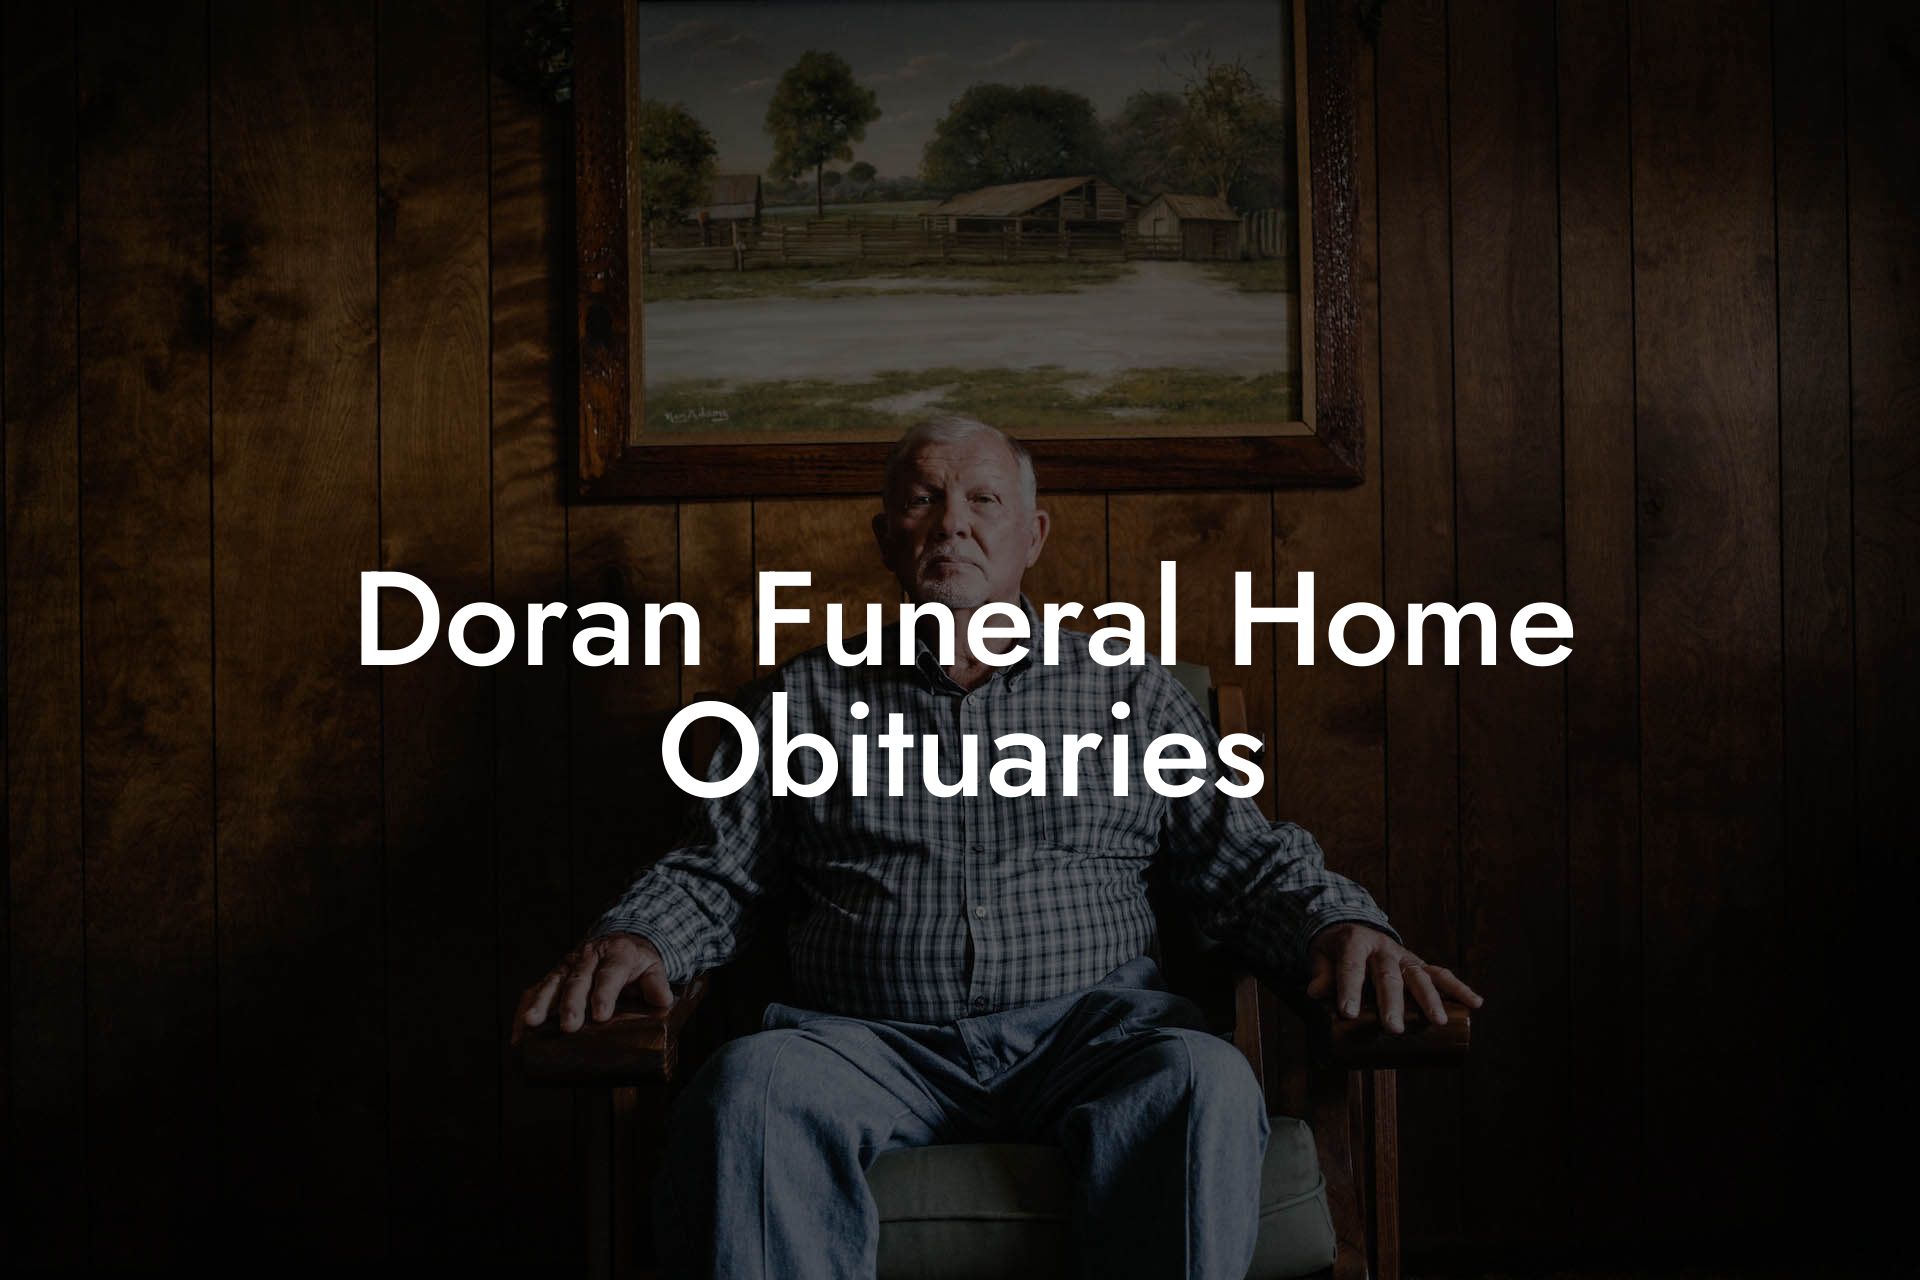 Doran Funeral Home Obituaries